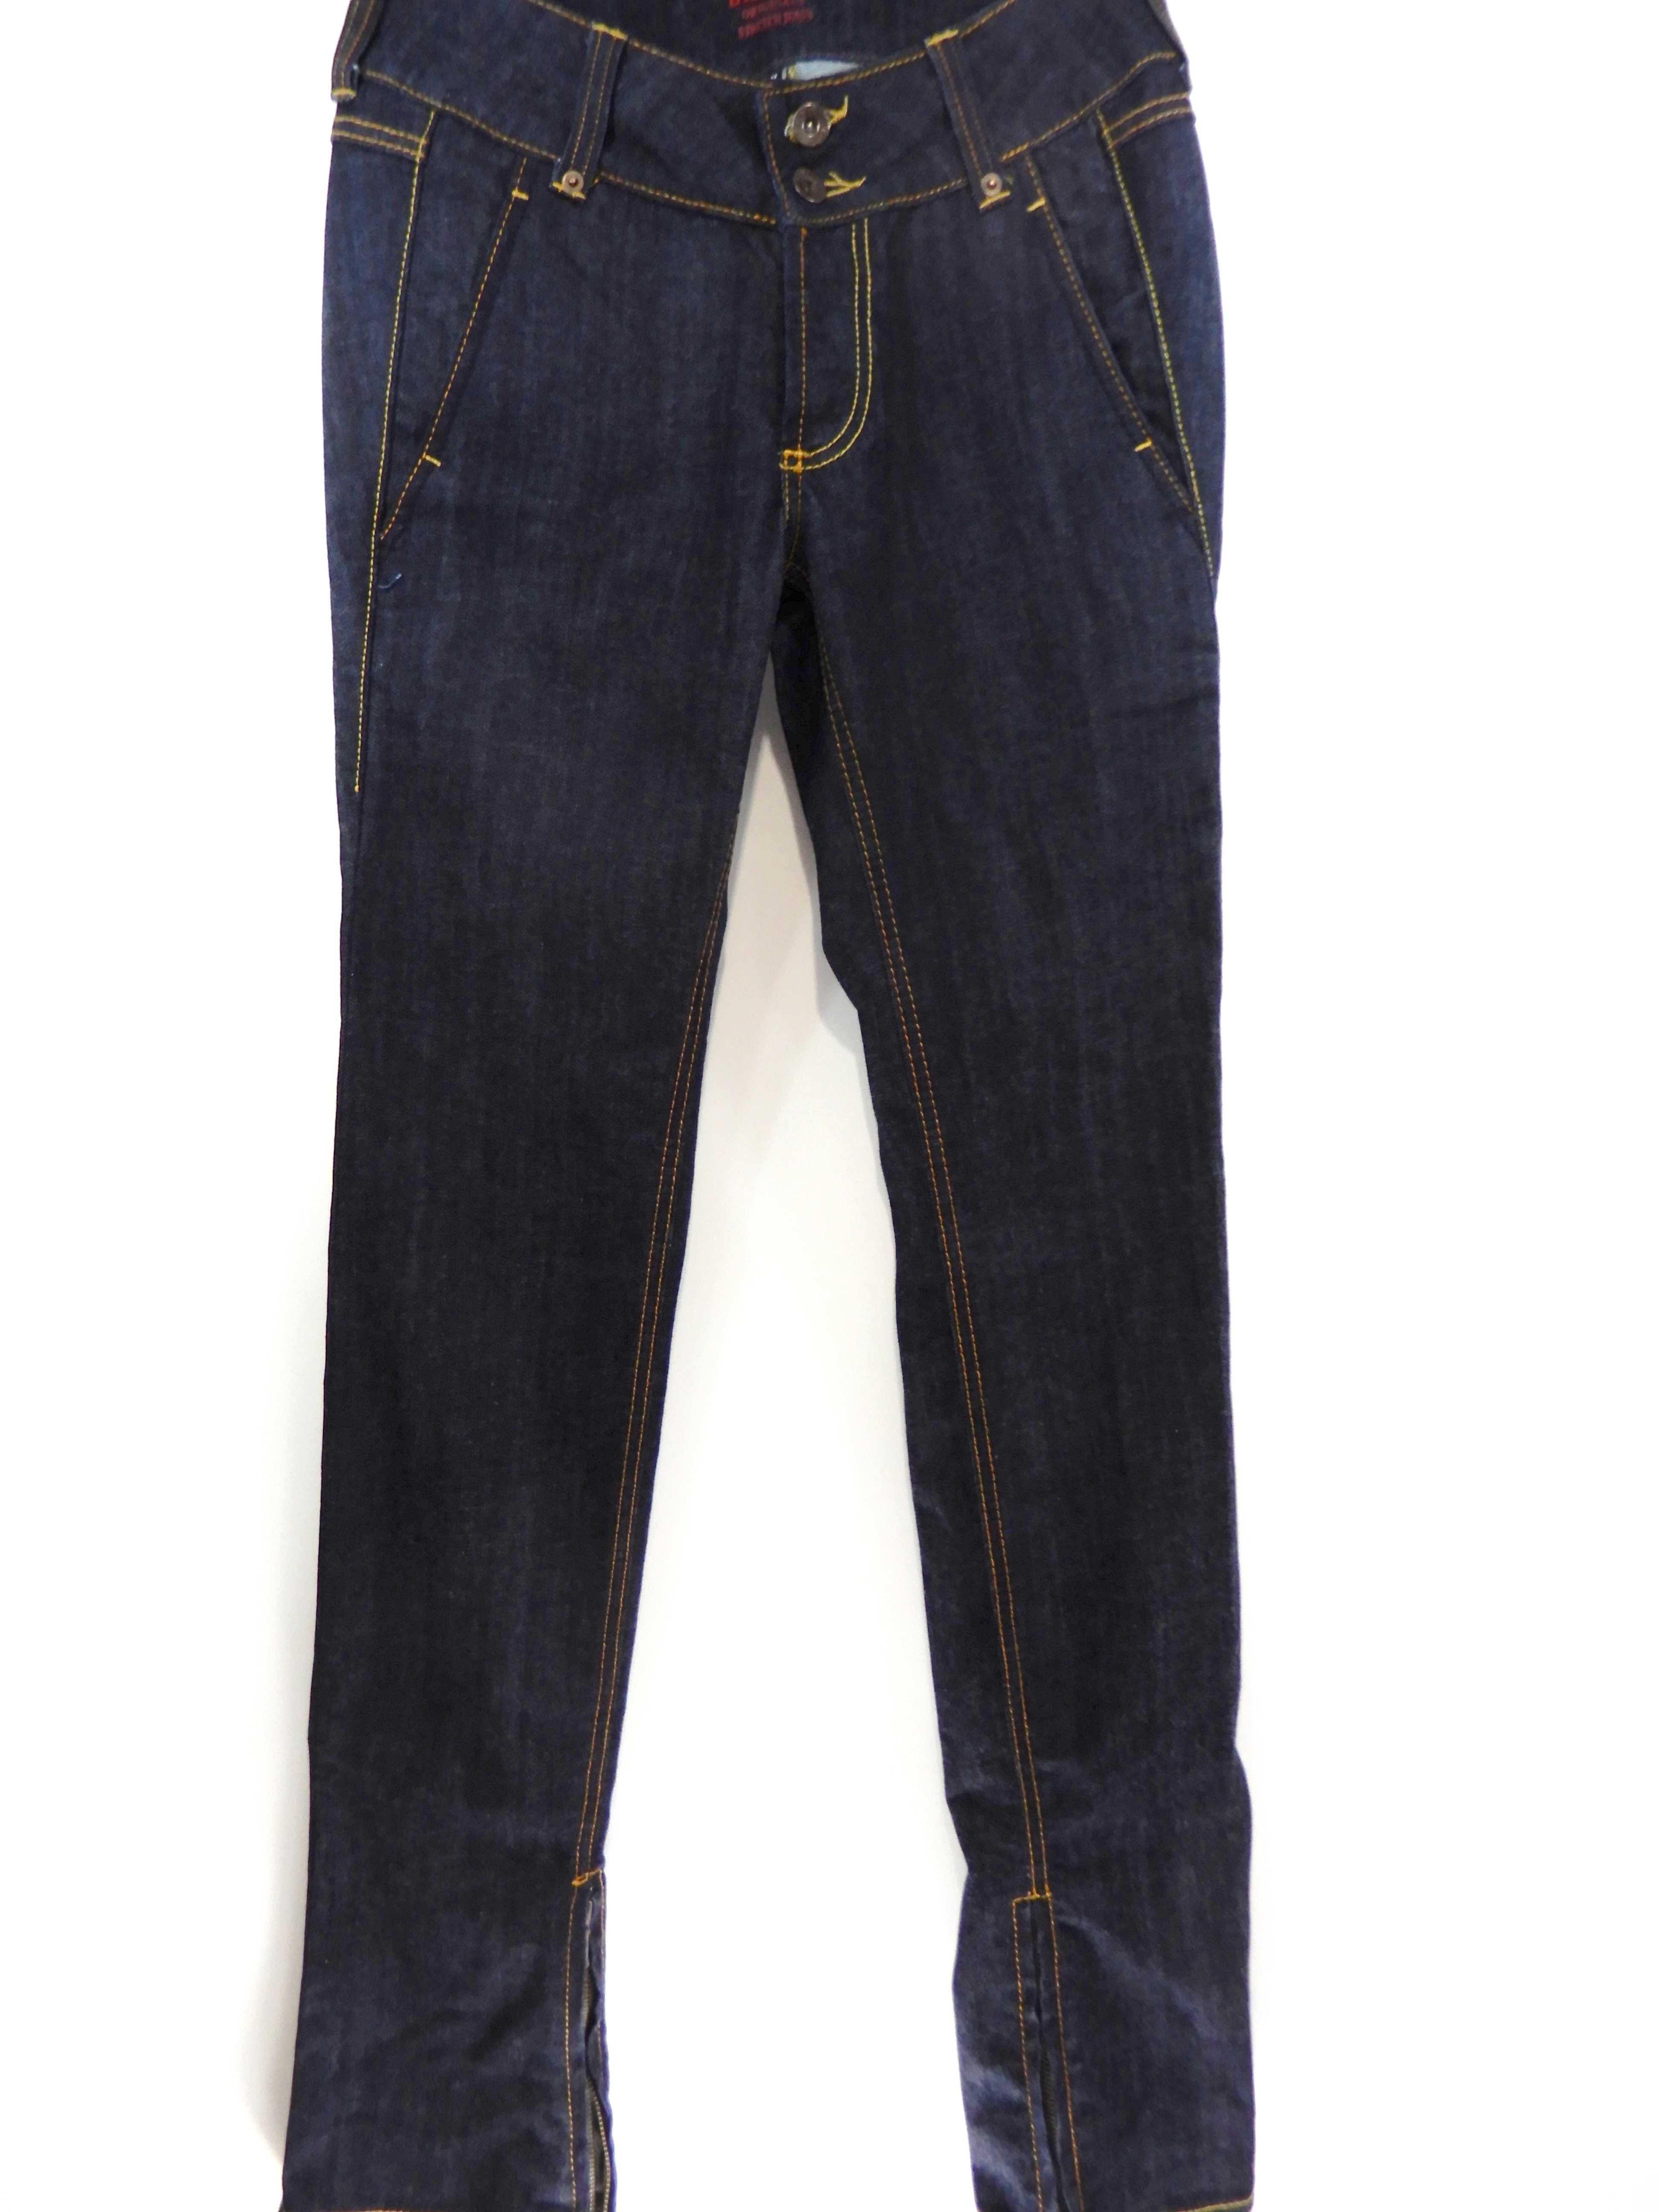 Spodnie jeansowe dżinsowe z zamkami rozporkami granatowe Bik Bok 38 M